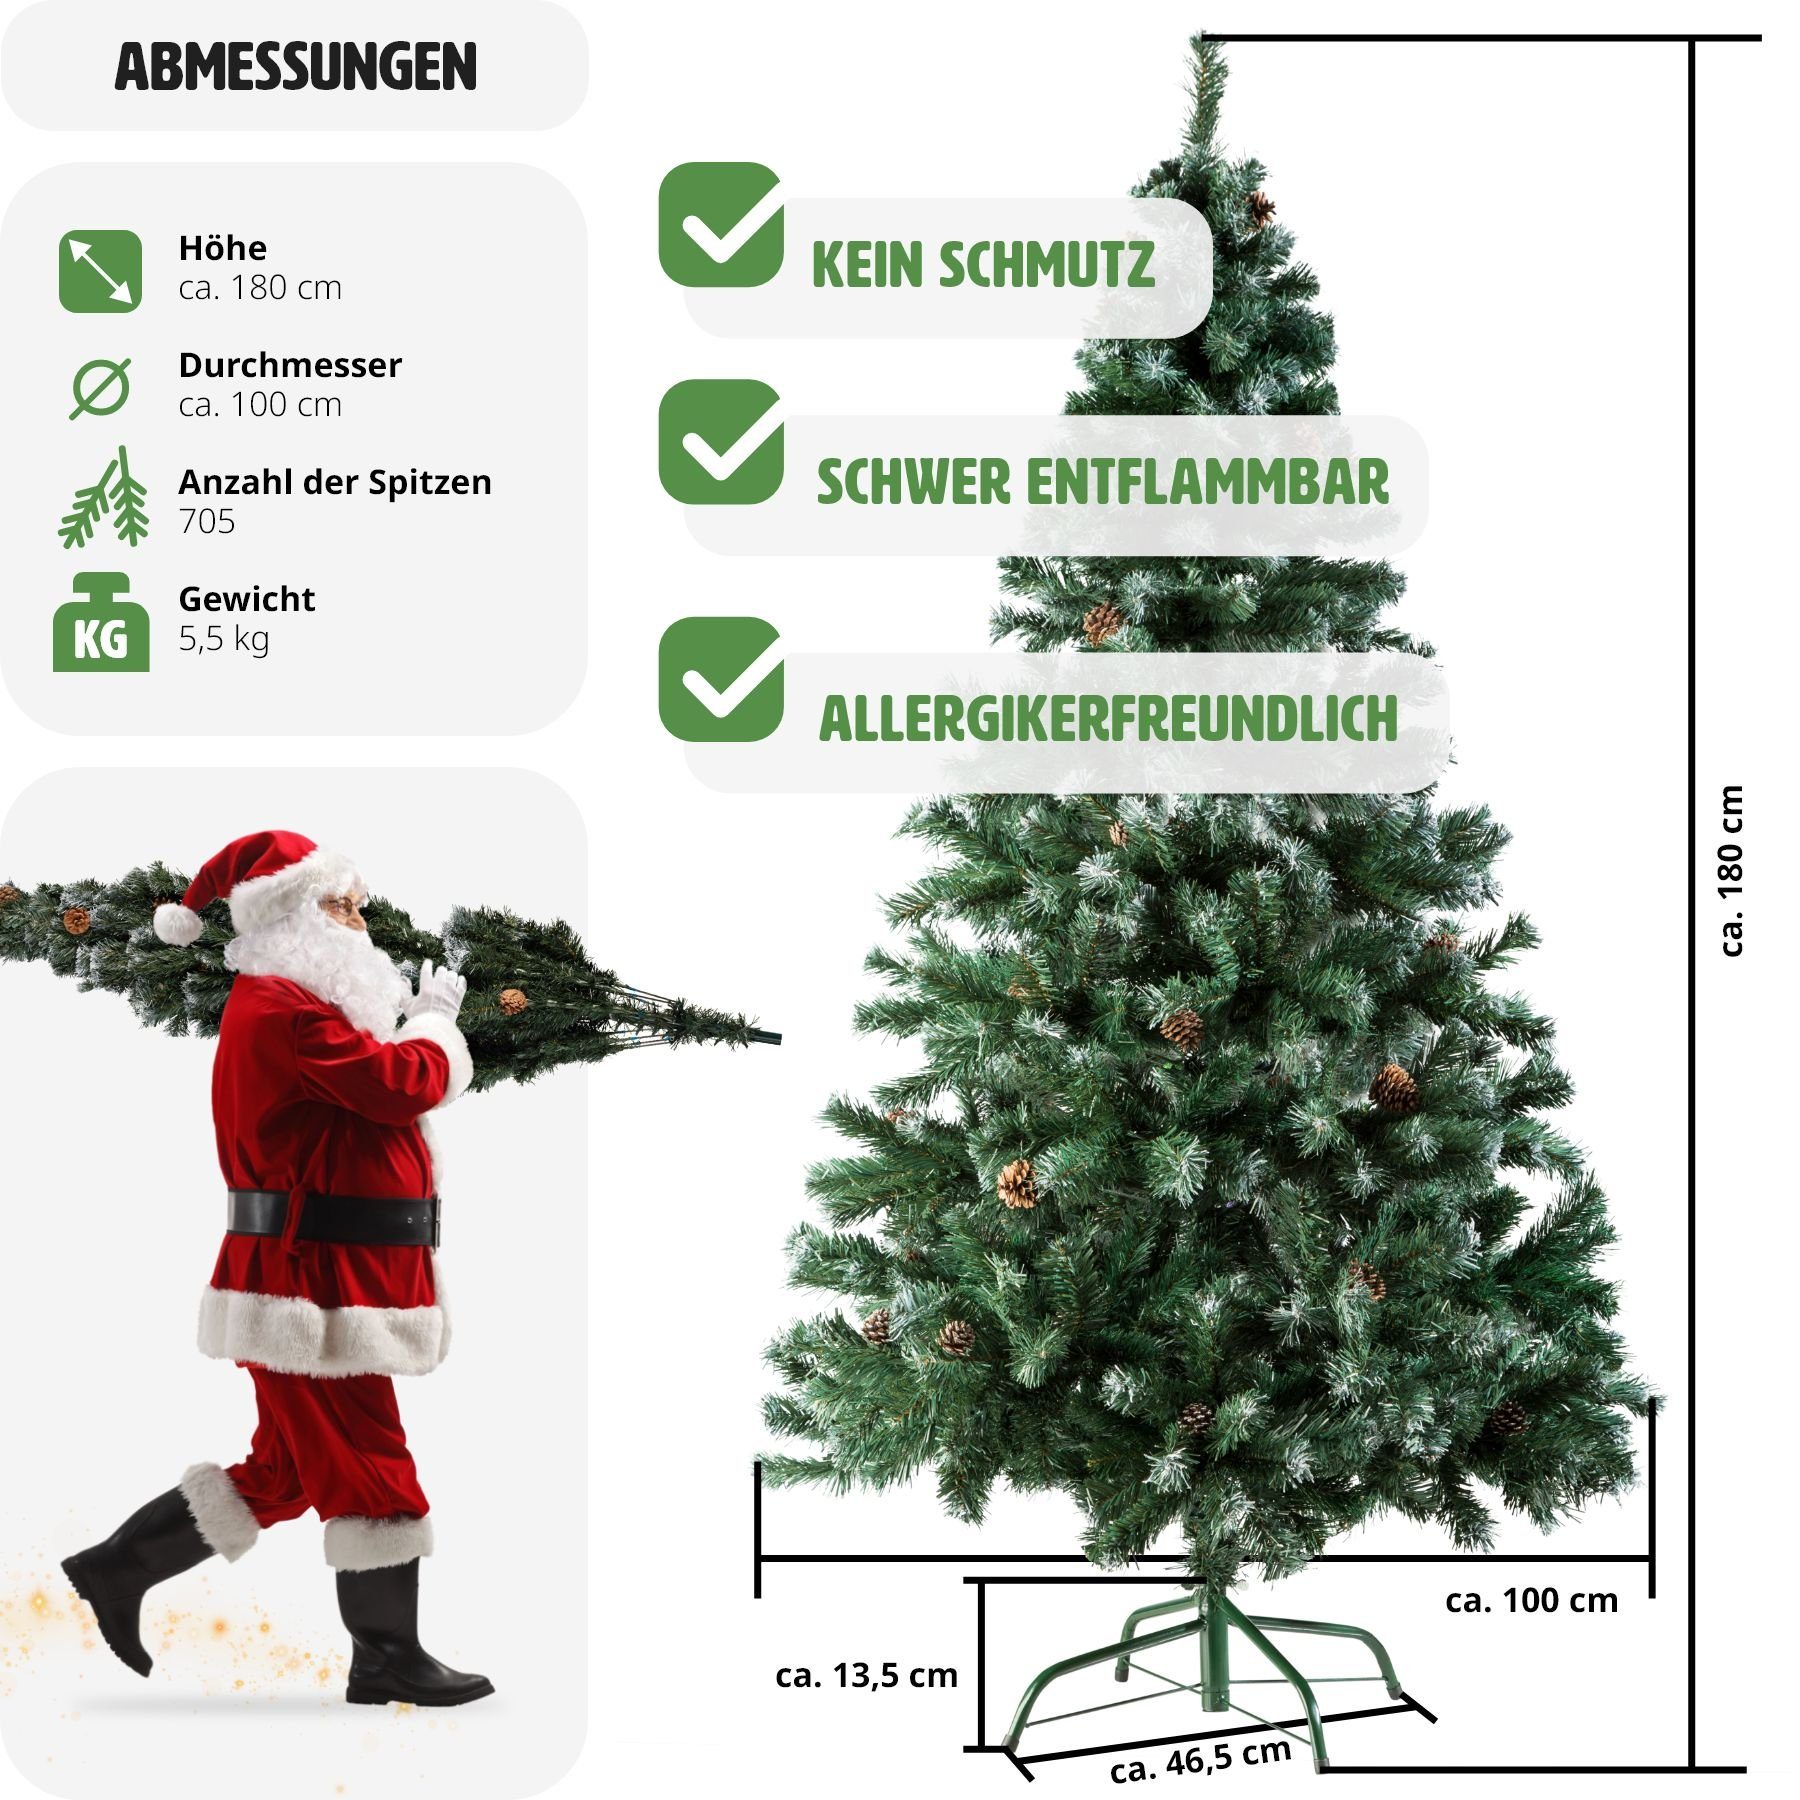 tectake Künstlicher Weihnachtsbaum Weihnachtsbaum mit grün, künstlich Baum 705 Zapfen Spitzen, mit und, Undekorierter/Unbeleuchteter Zapfen